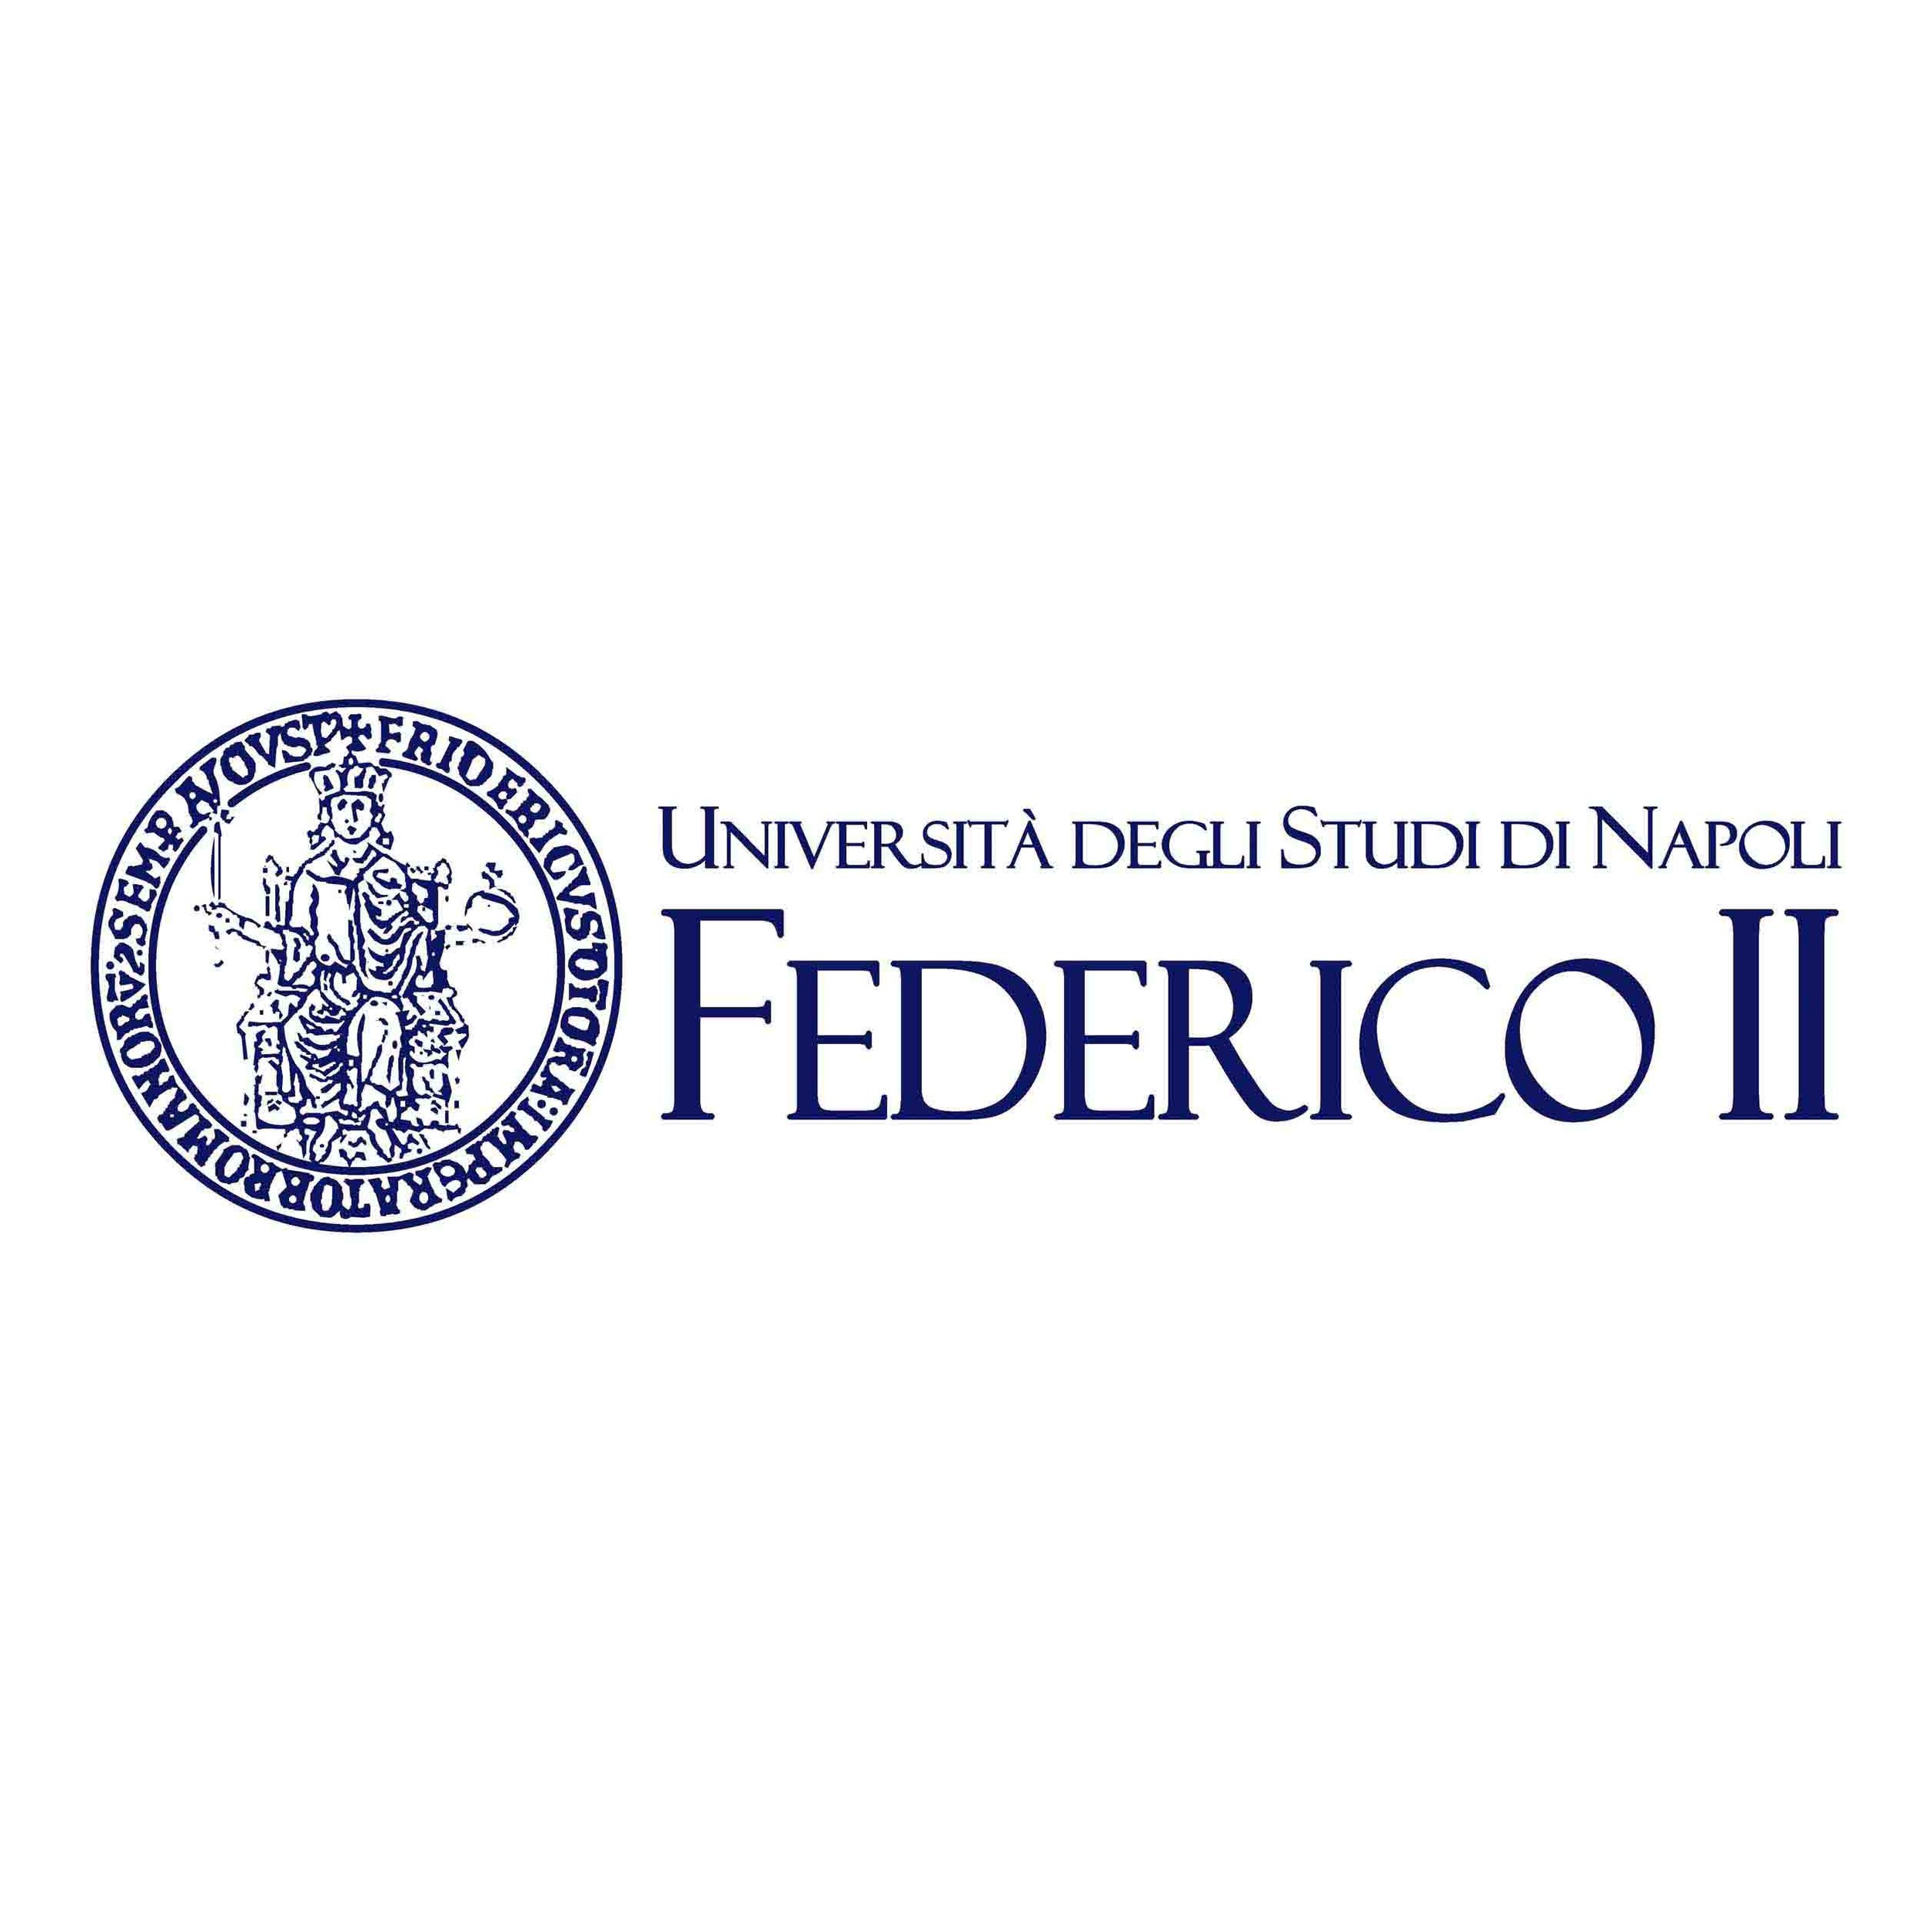 7. Federico II - logo 1x1.jpg